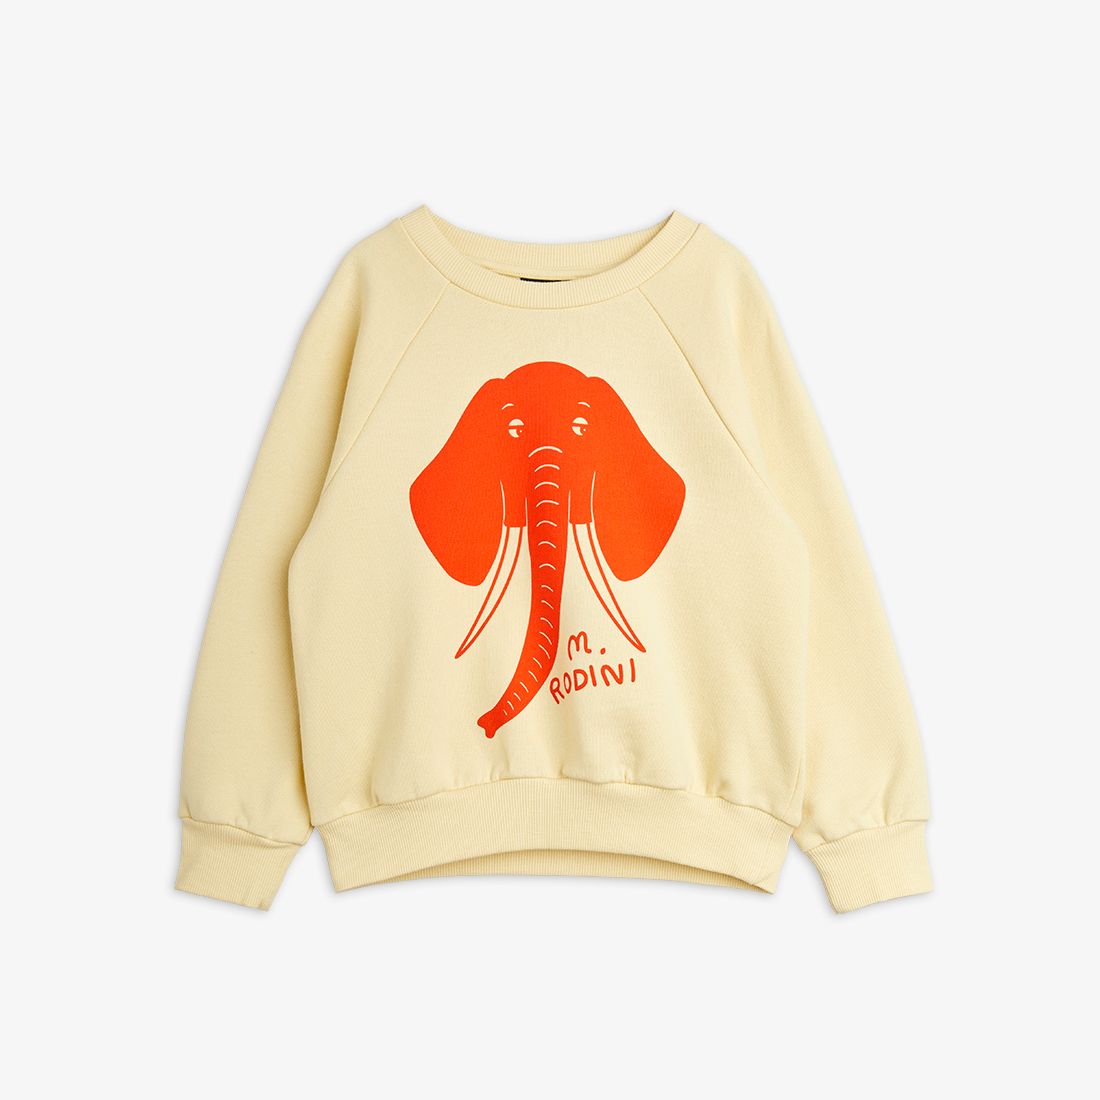 Elephant SP Sweatshirt